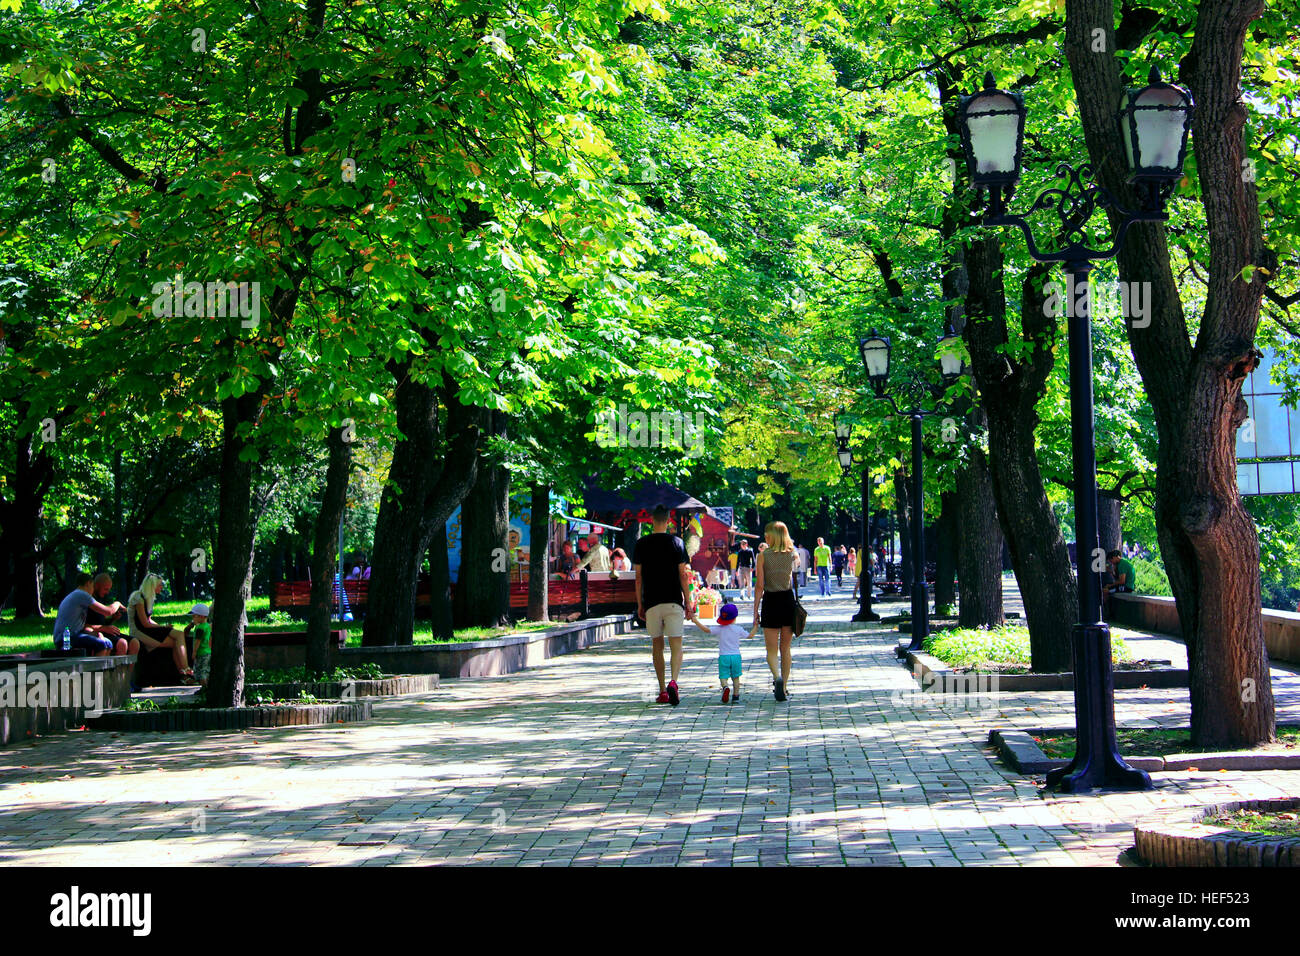 La gente a piedi sul largo sentiero nel parco con grandi alberi verdi Foto Stock